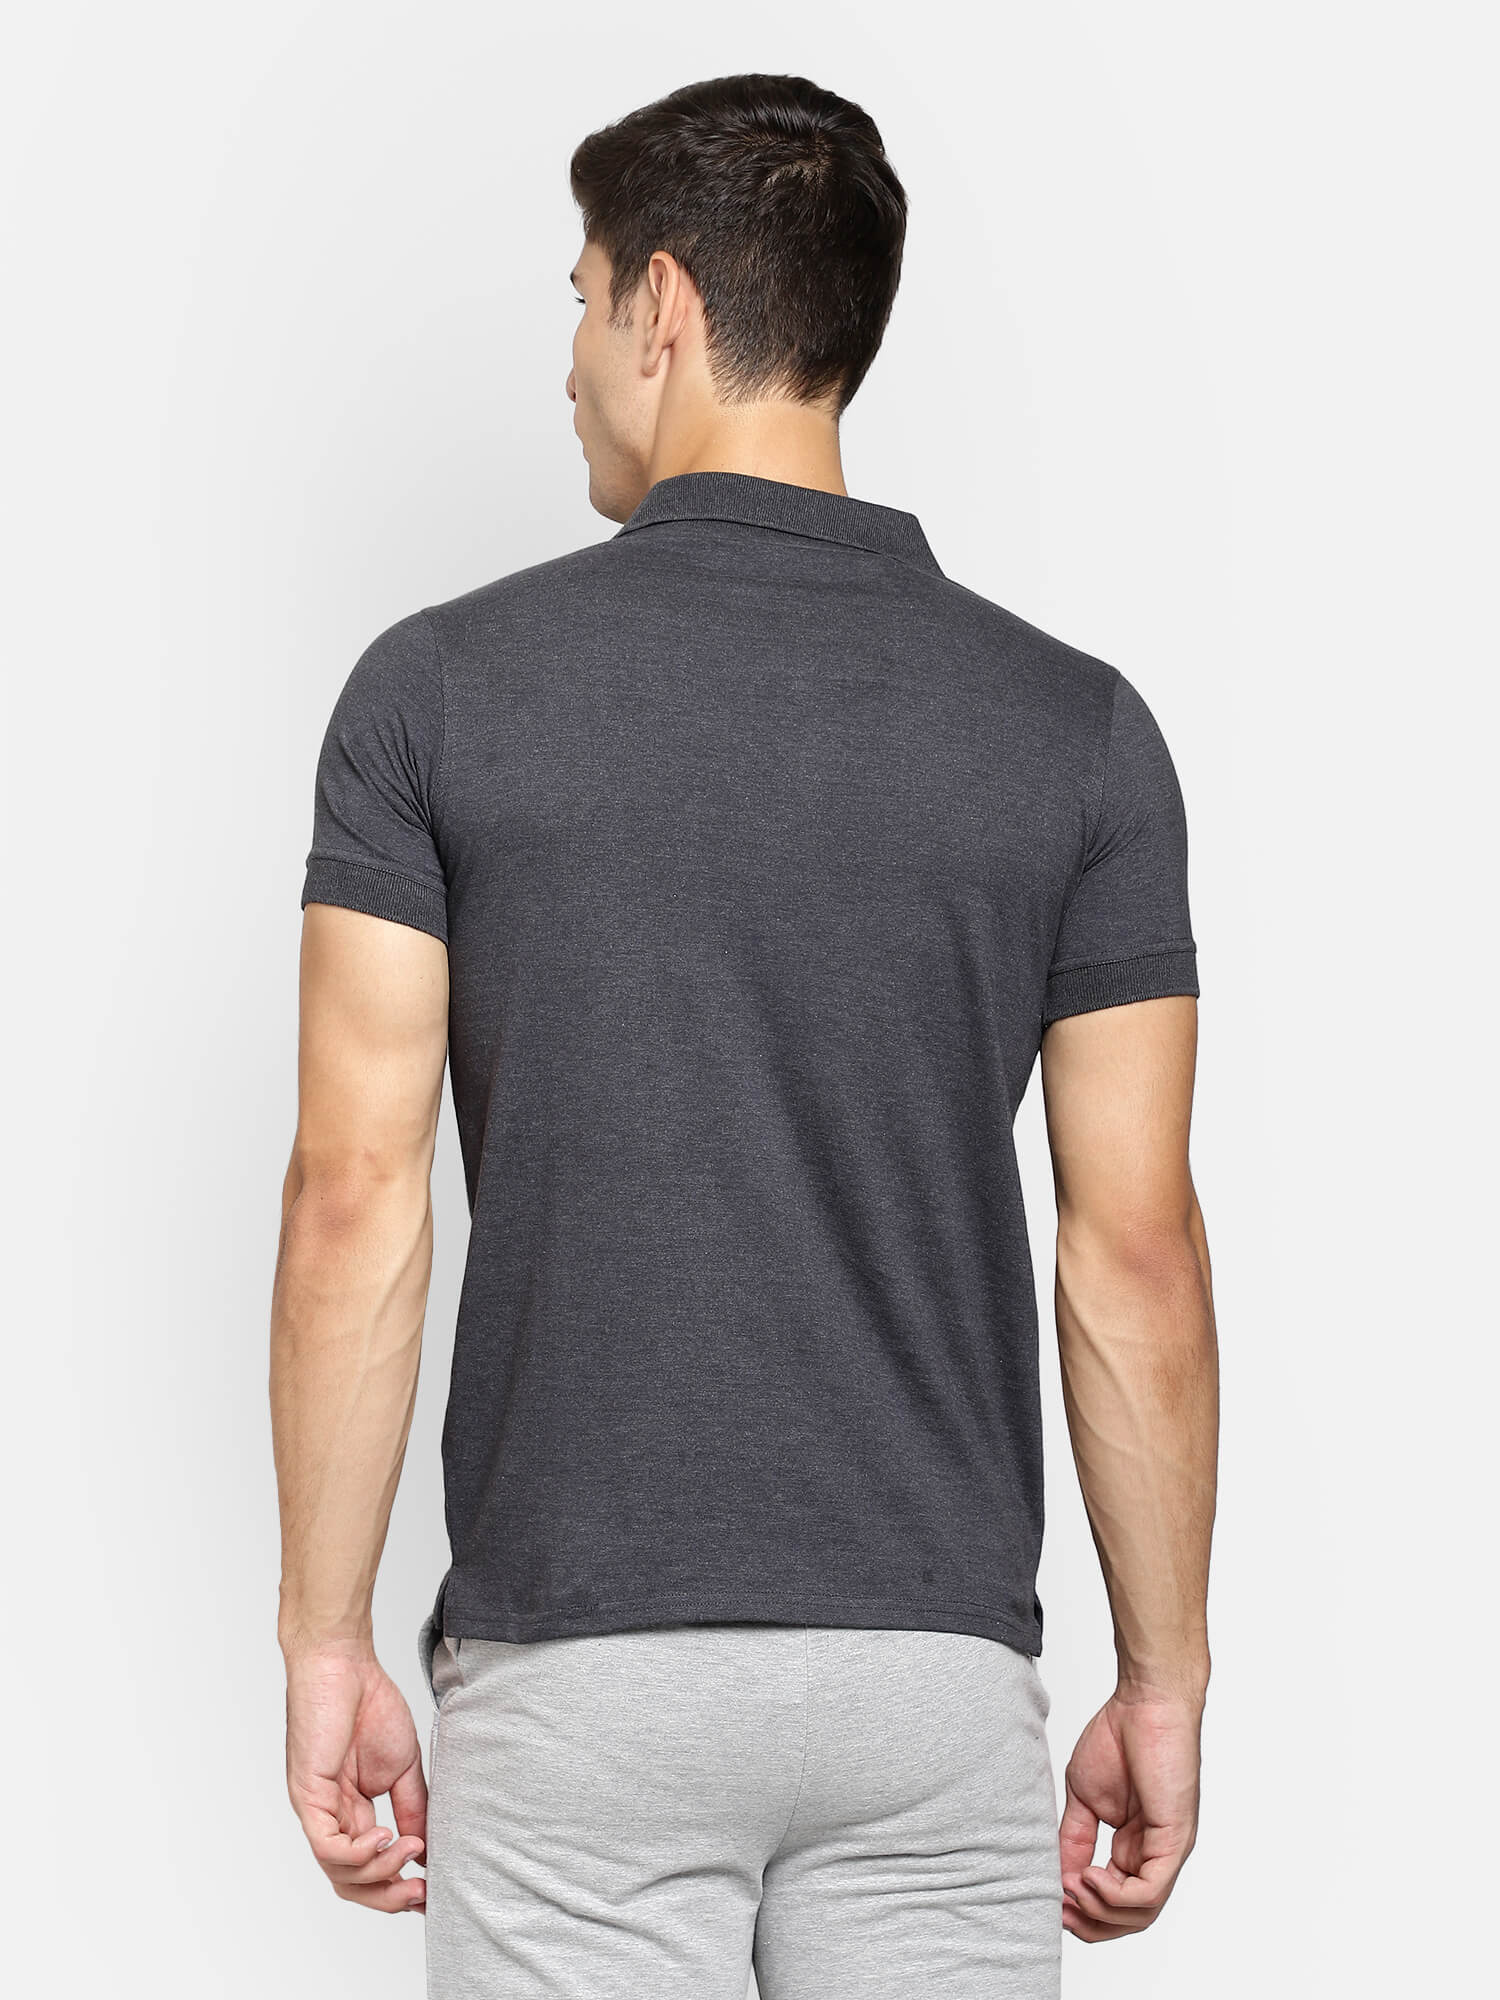 SECURITY POLO-SHIRT Schwarz - Brust & Rücken bedruckt, T-Shirt Größe:S :  : Fashion